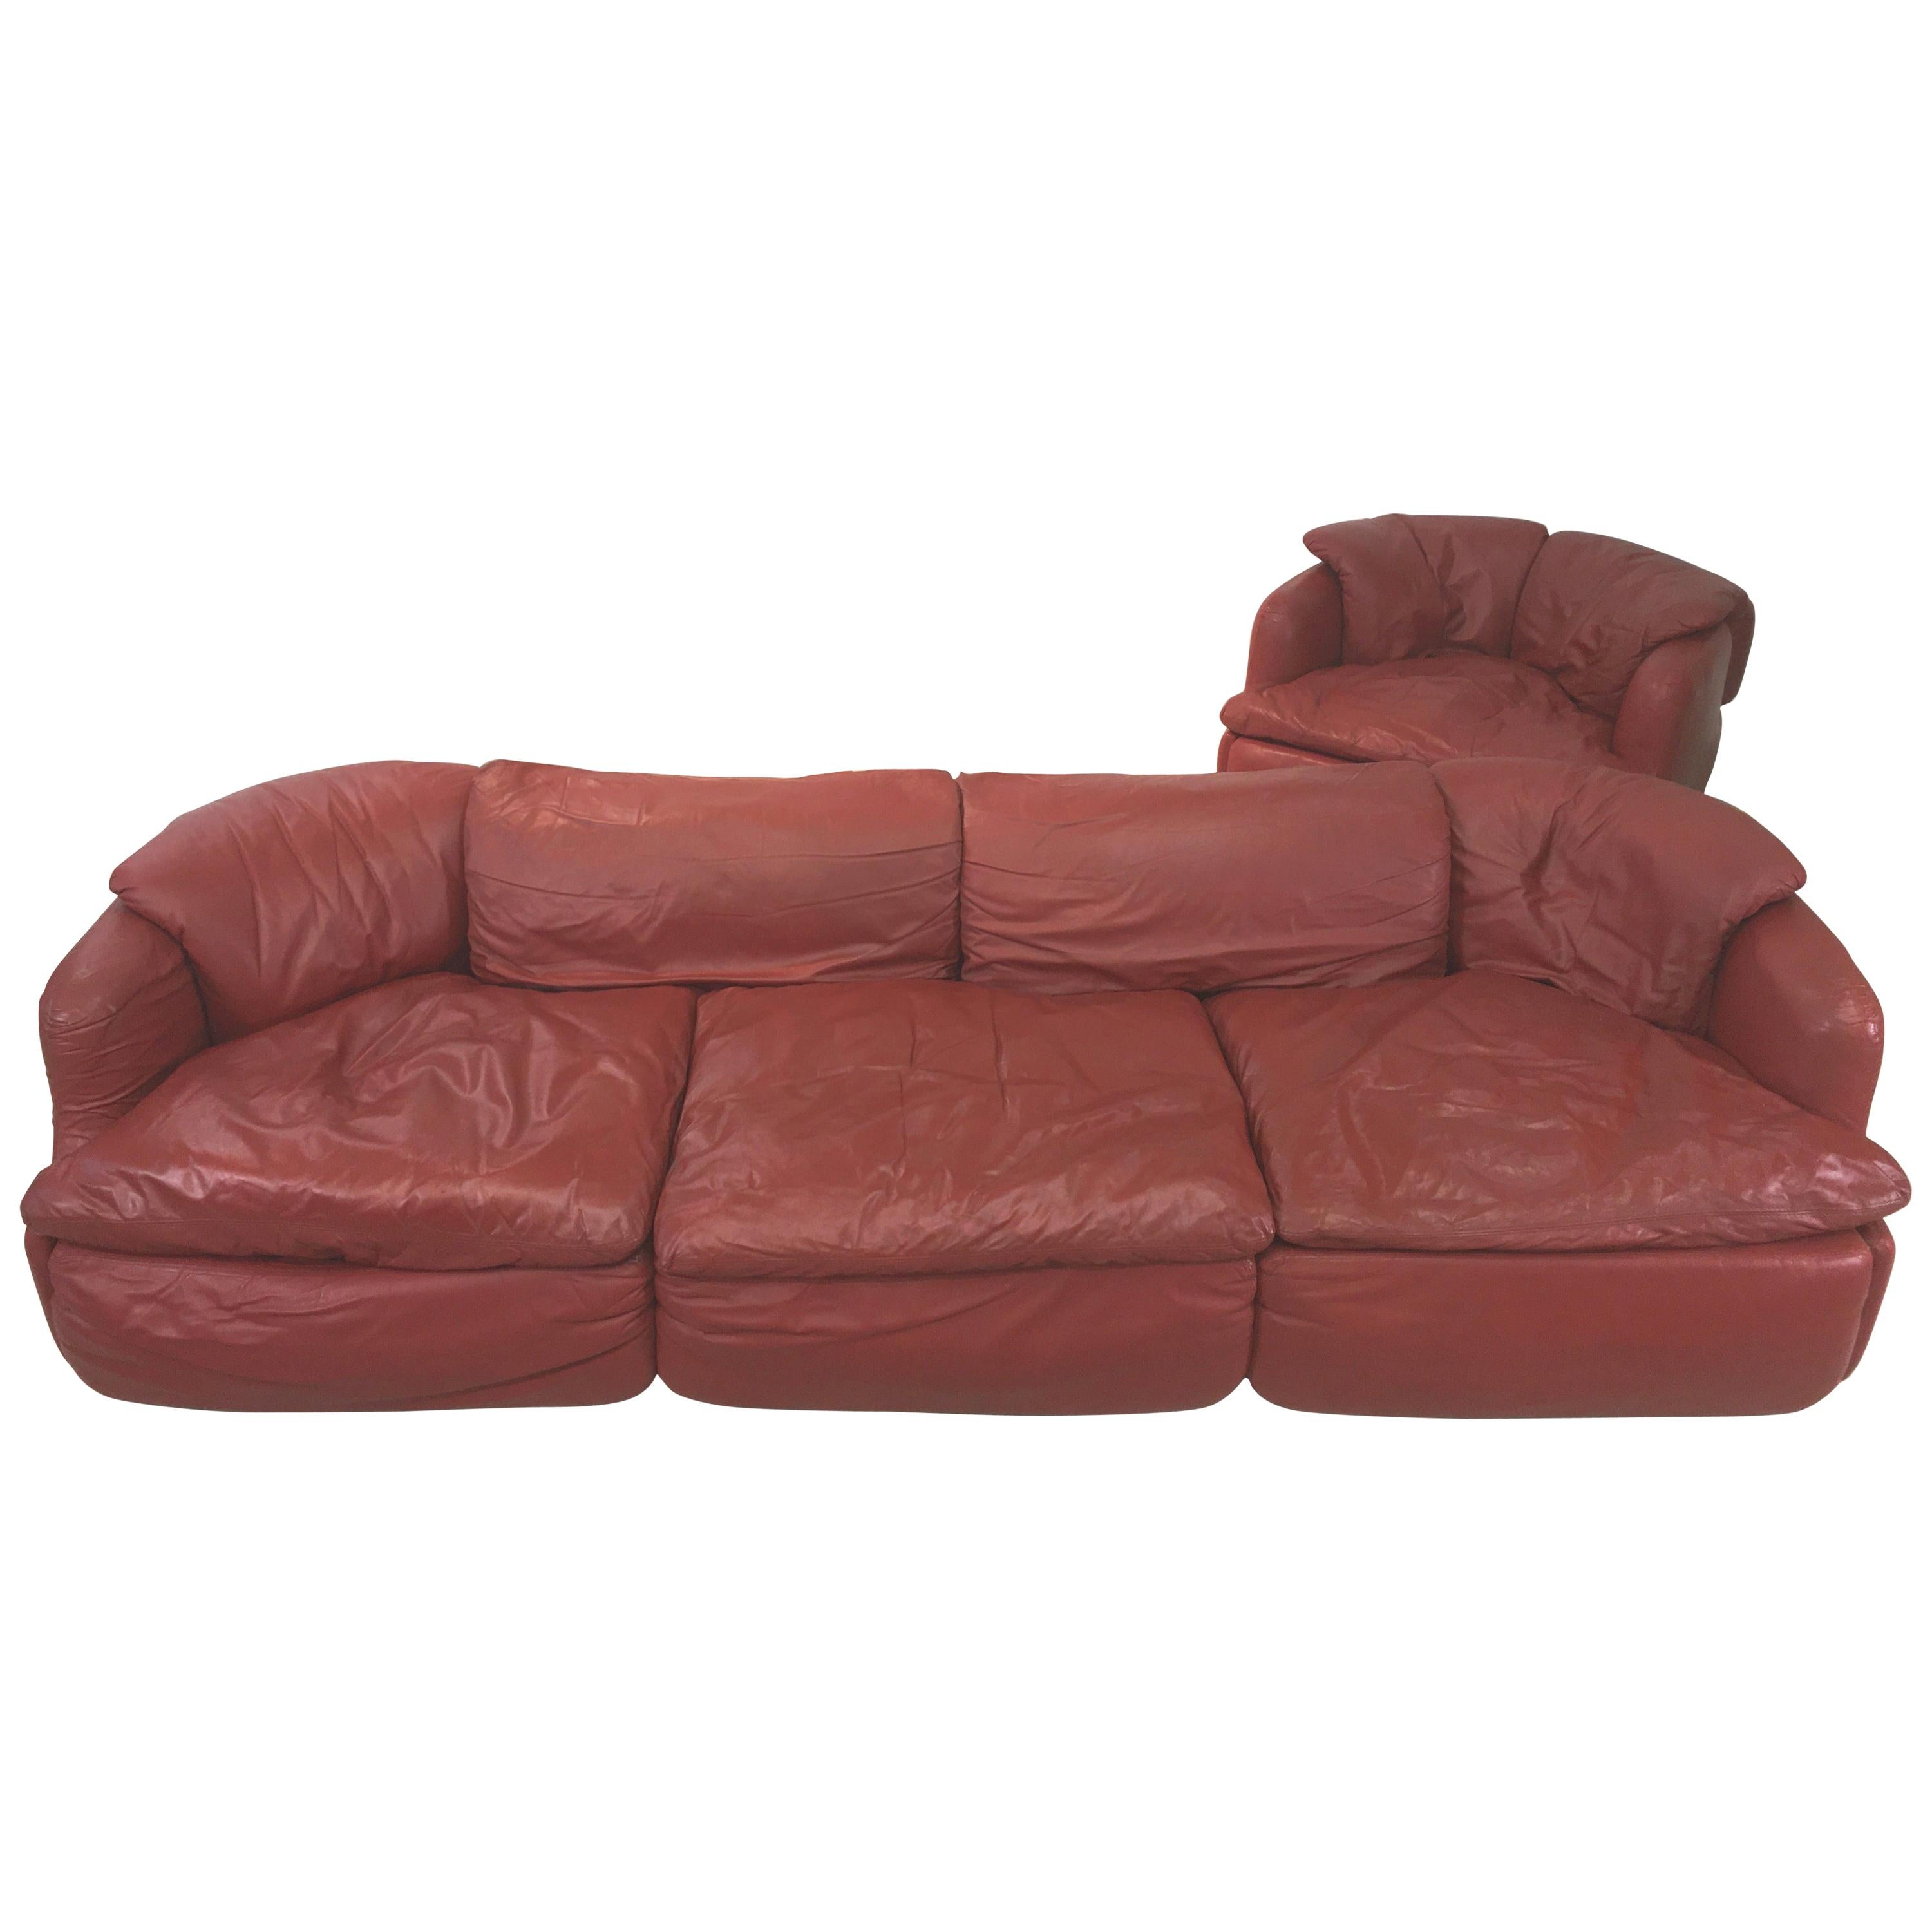 Wir haben ein ziegelrotes Leder-Sofa und einen passenden Sessel, die der italienische Architekt Alberto Rosselli 1972 für Saporiti Italia entworfen hat. Insgesamt zwei Stück. Der angegebene Preis gilt für das Sofa und den Sessel zusammen.
Das